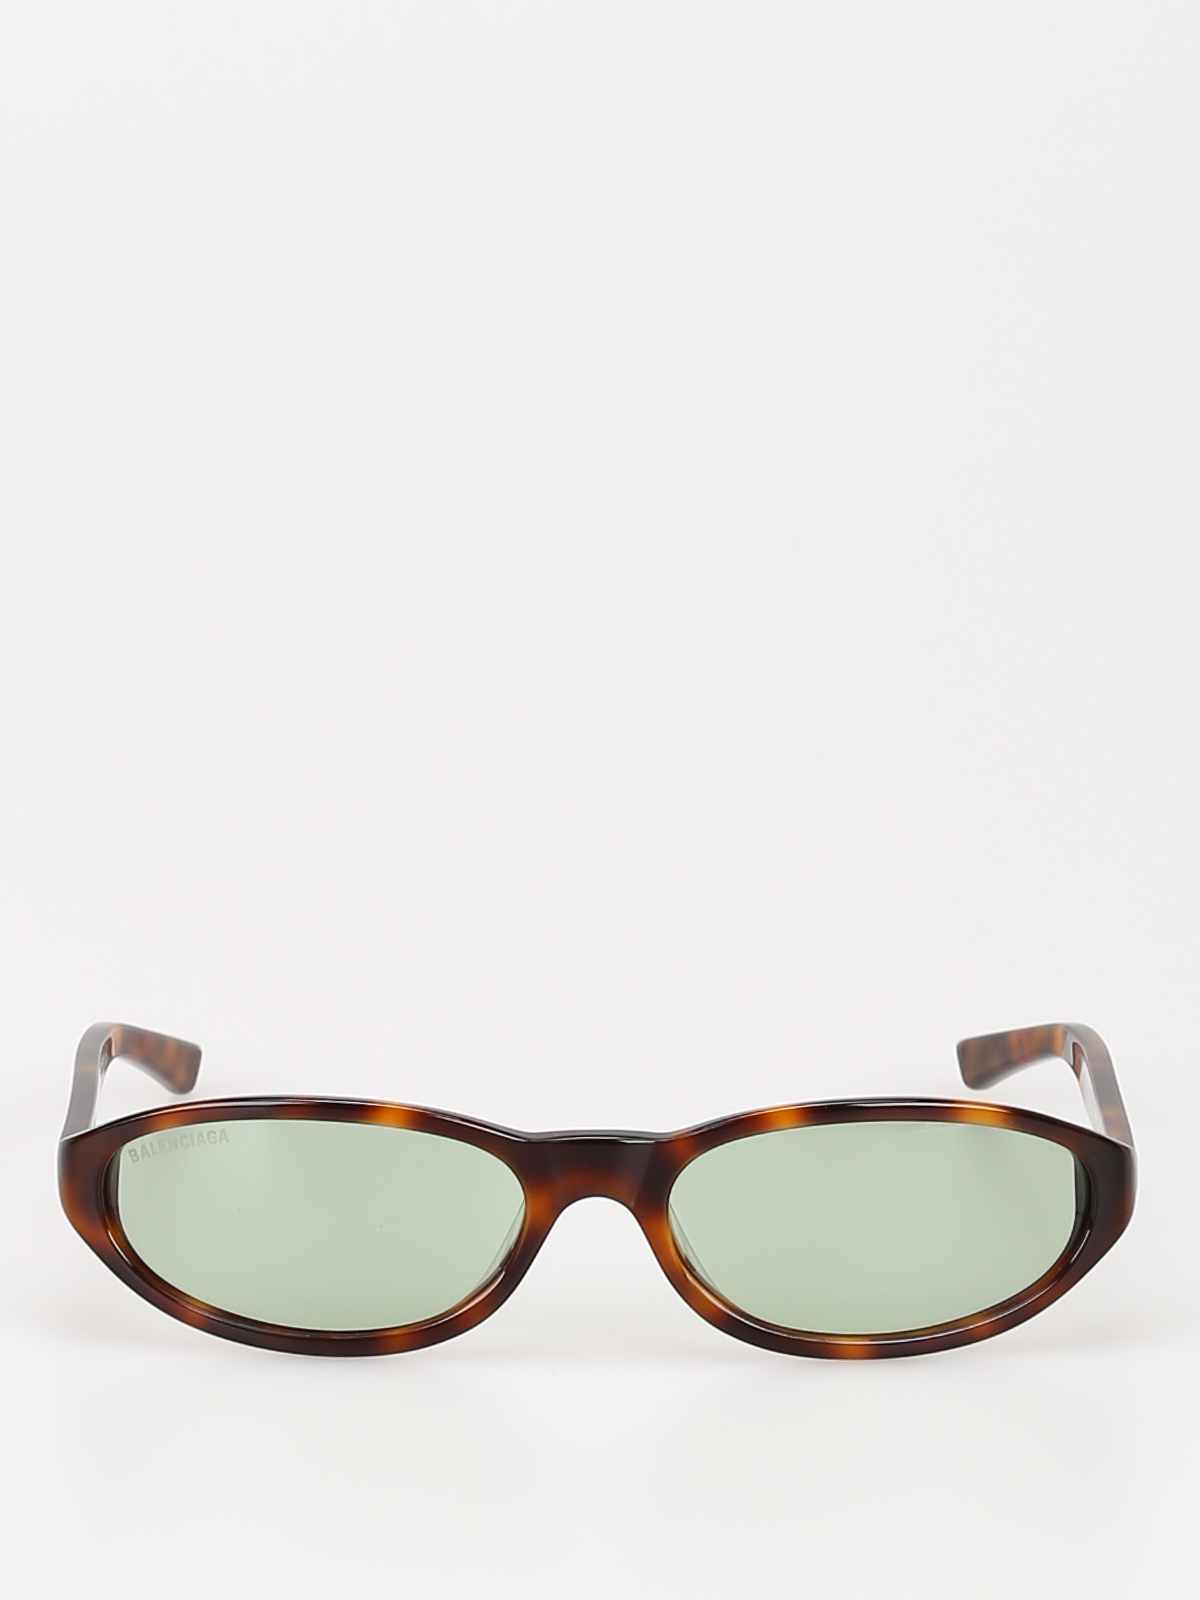 Sunglasses Balenciaga - Green lens tortoiseshell sunglasses - BB0007S002